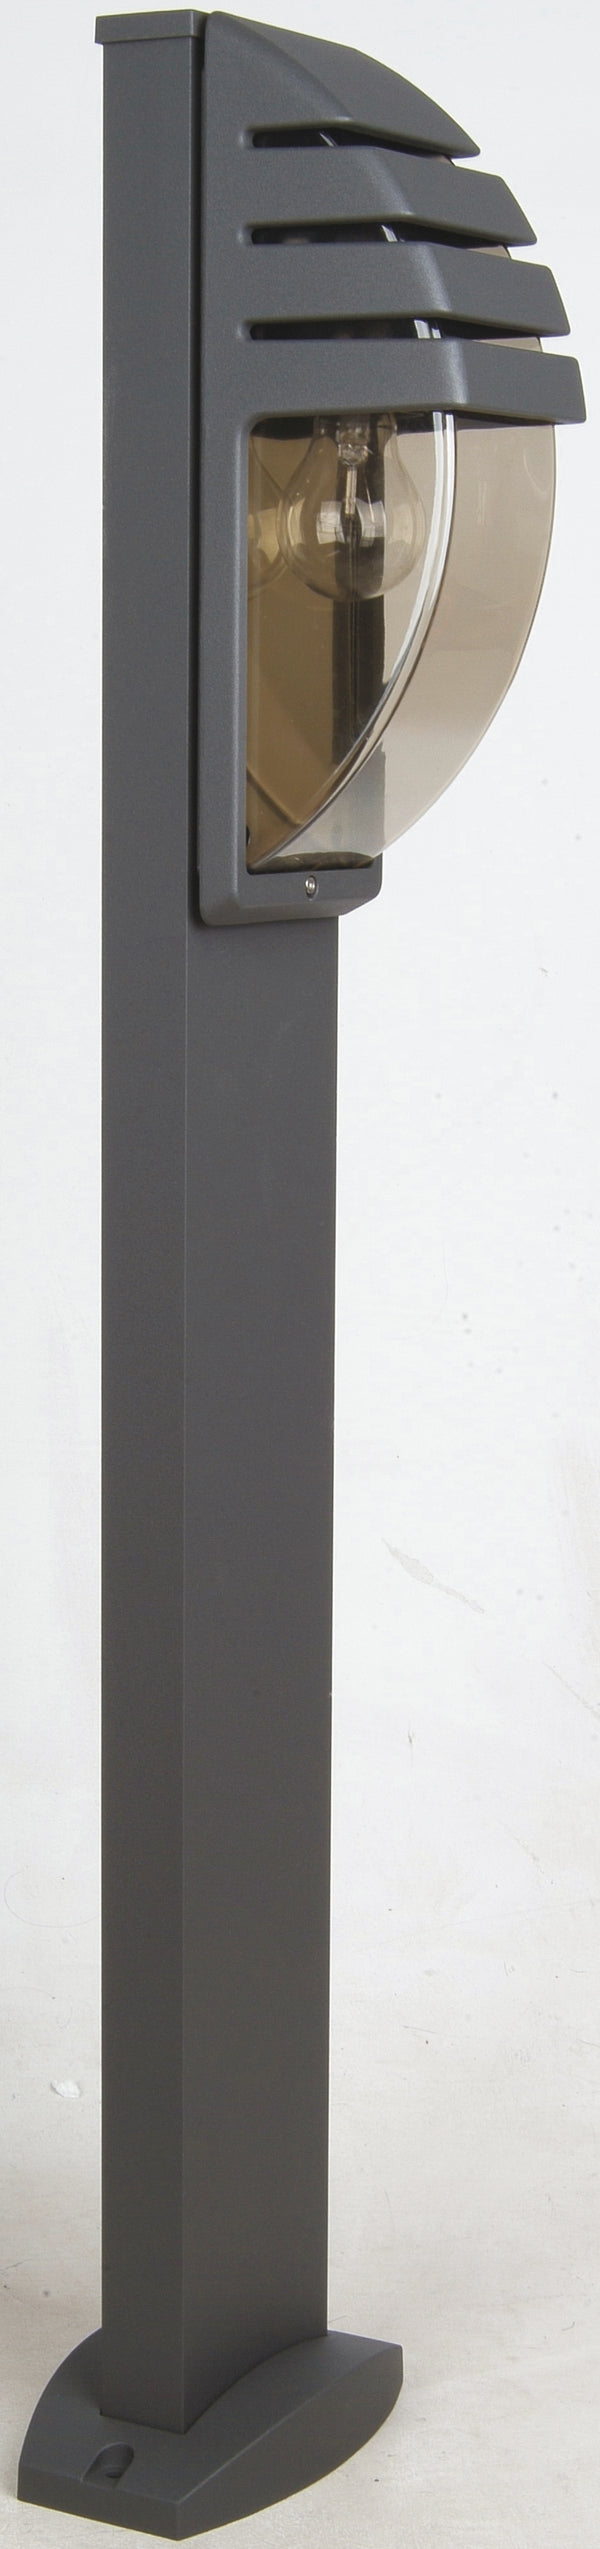 Paletto Alluminio Antracite Diffusore Policarbonato Oscurato Giardino Esterno E27 prezzo